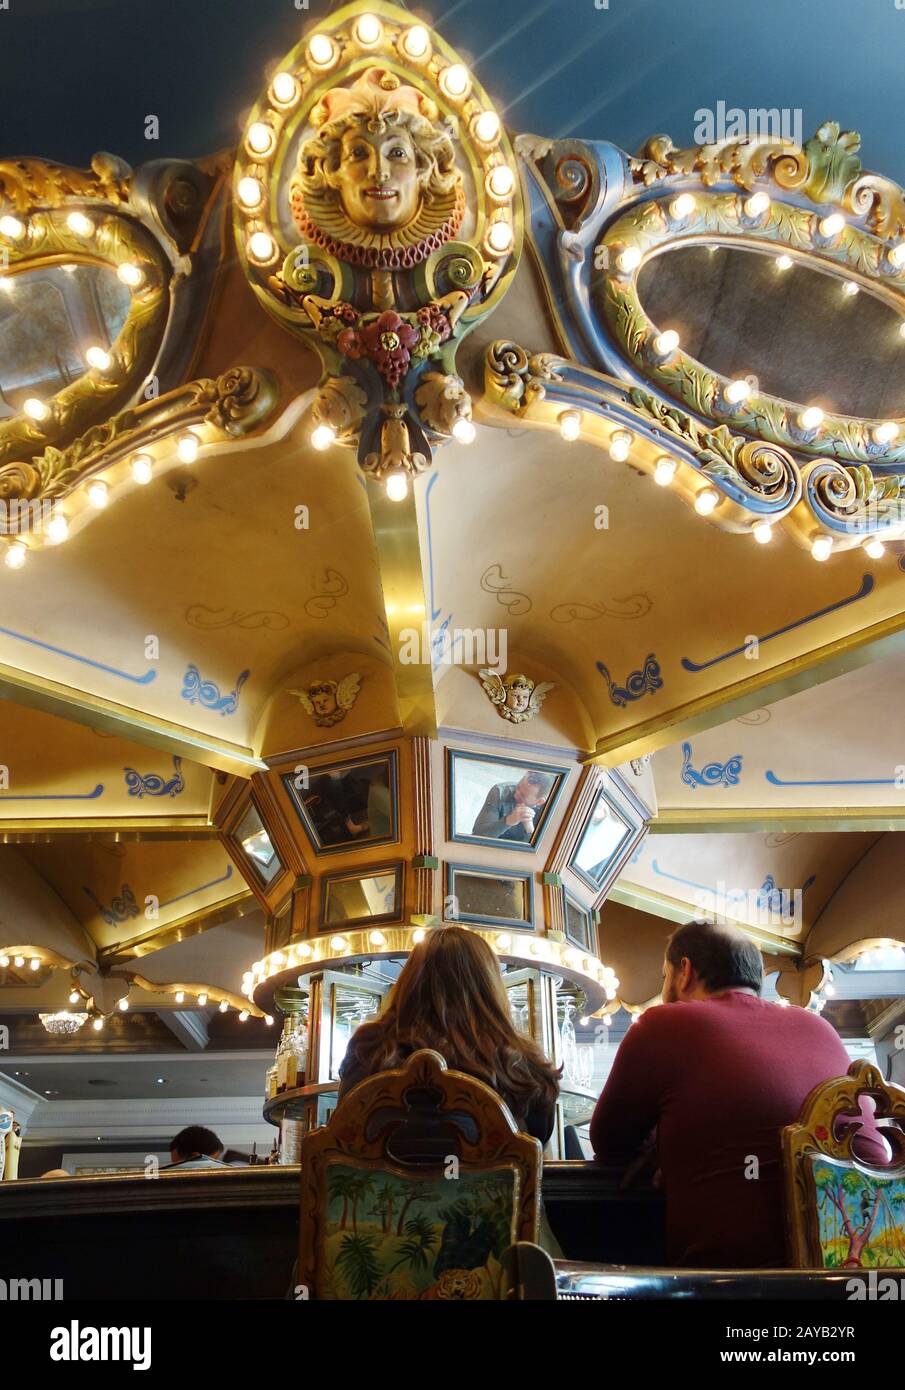 LA NOUVELLE-ORLÉANS,LA/USA -03-17-2019: Le célèbre bar tournant de l'hôtel Monteleone dans le quartier français de la Nouvelle-Orléans Banque D'Images